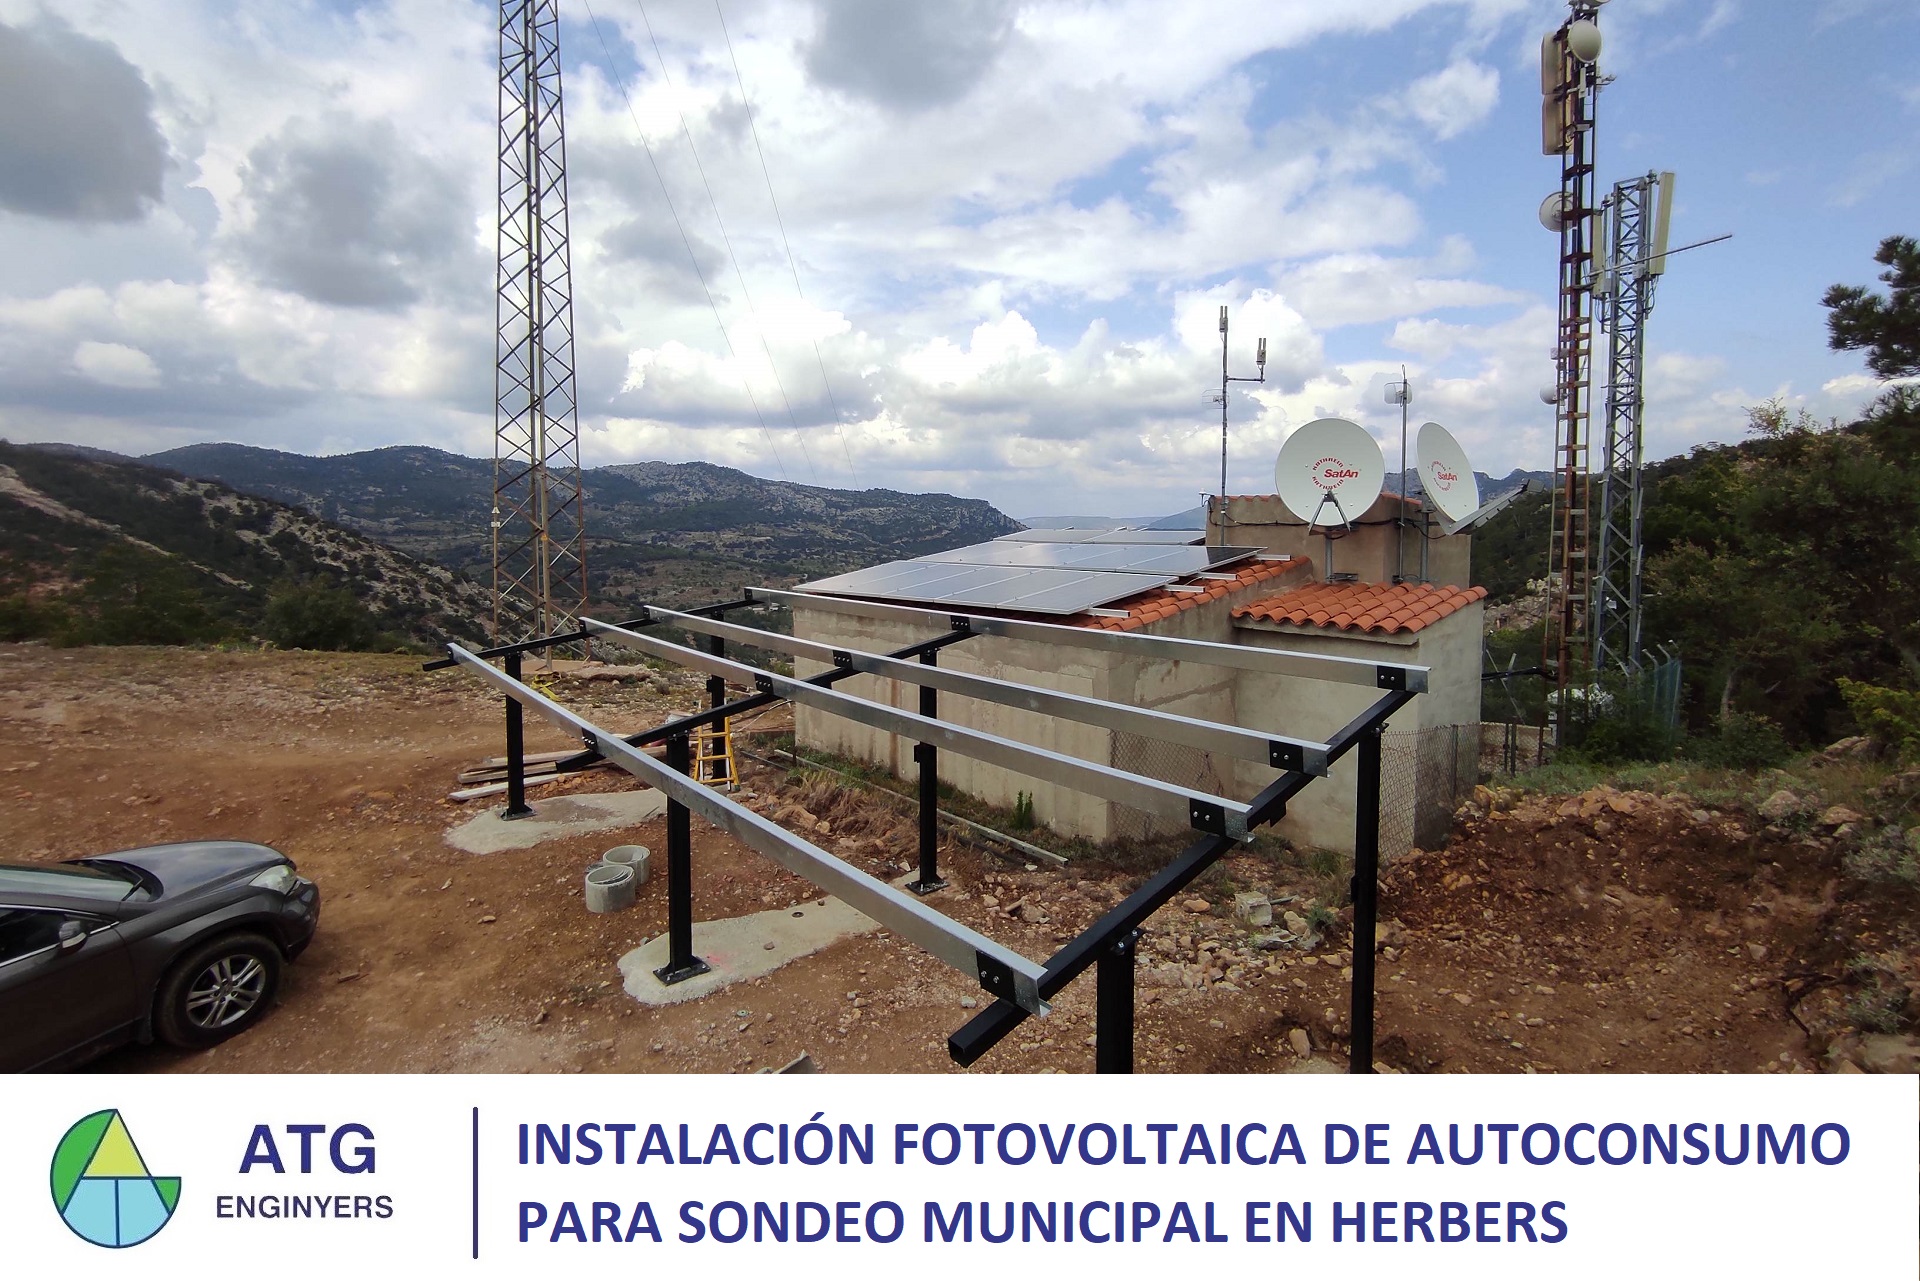 Instalación fotovoltaica de autoconsumo para sondeo municipal en Herbers.